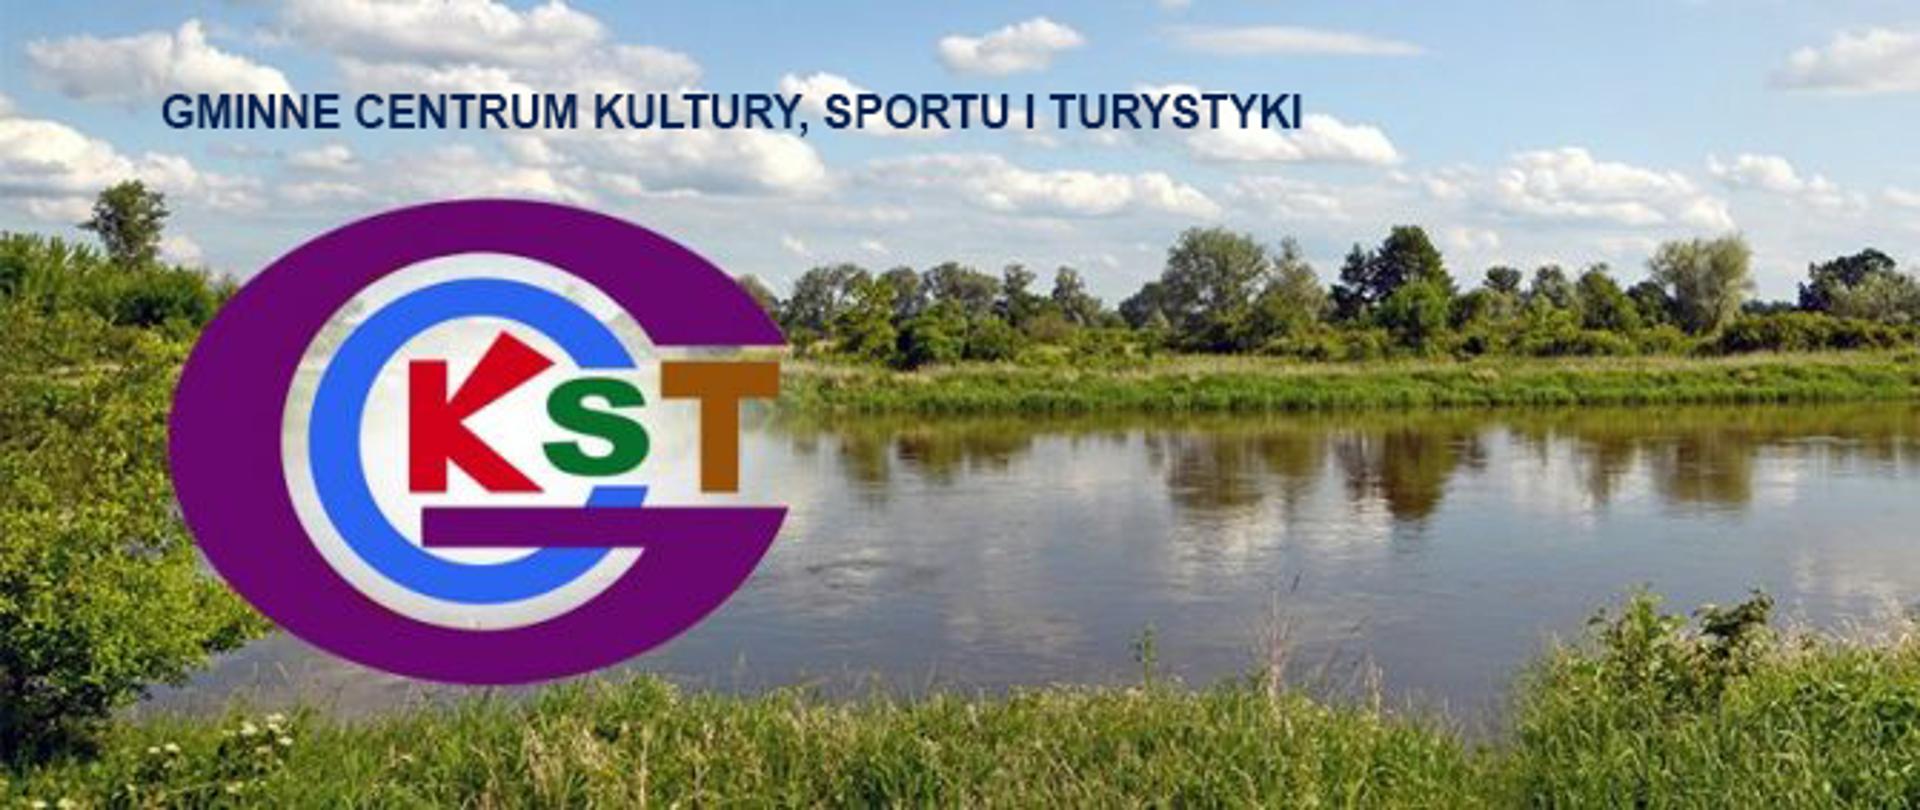 Logo Gminnego Centrum Kultury Sportu i Turystyki w tle rzeka Bug.